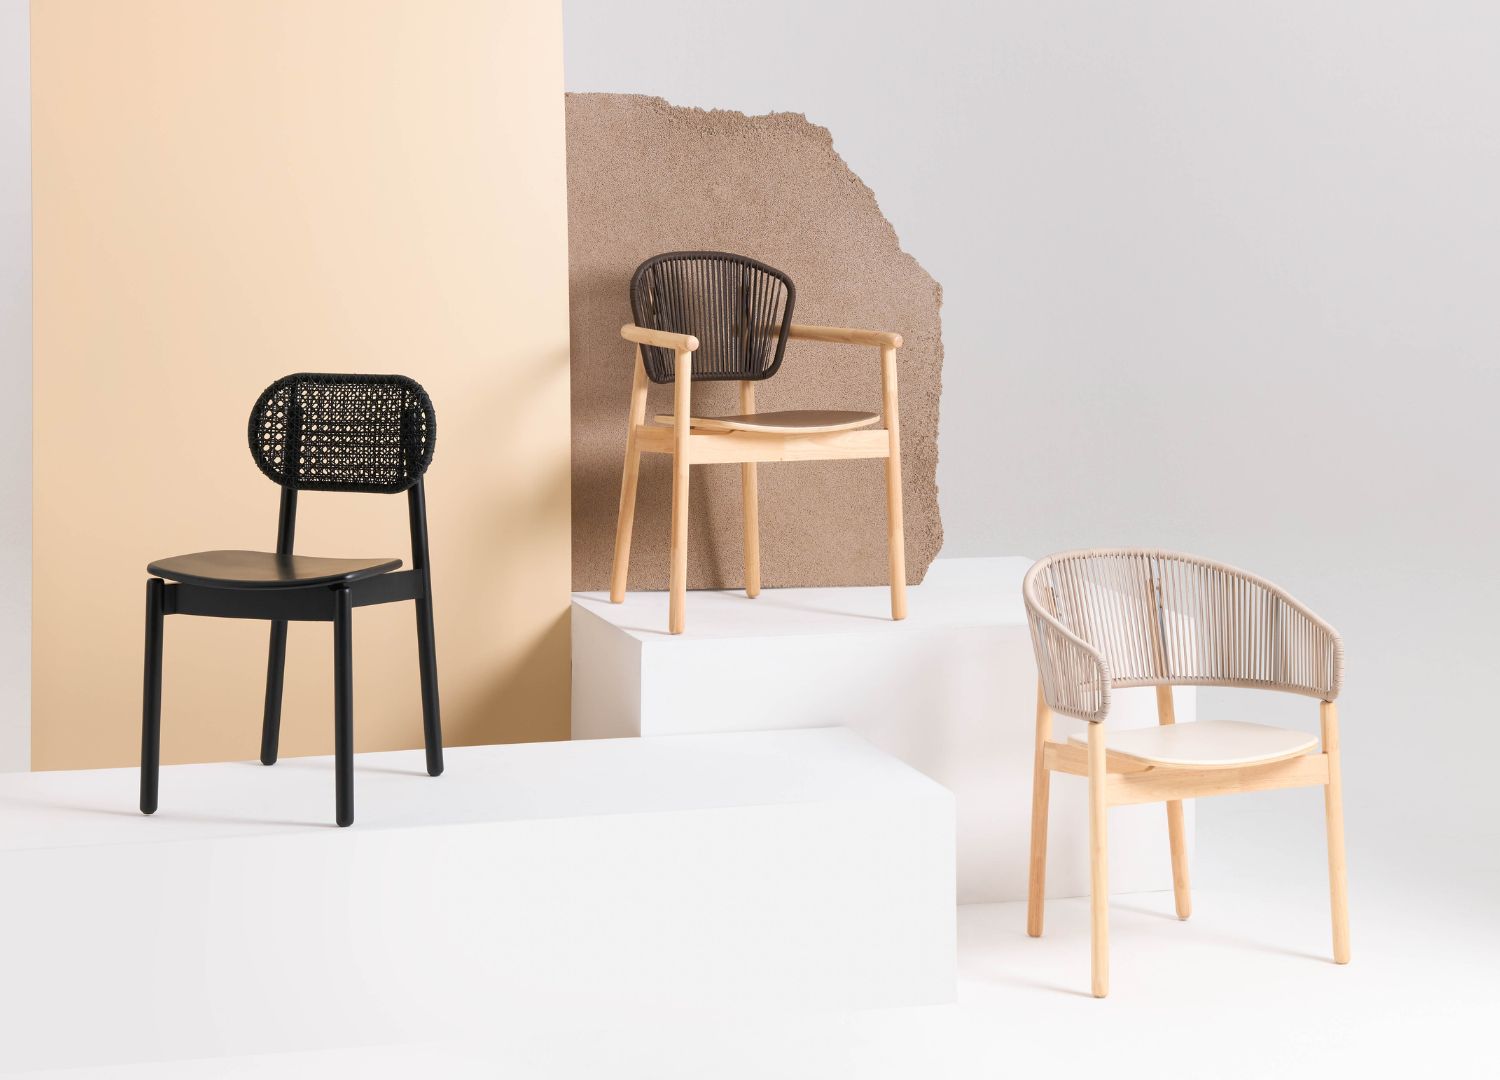 Bound chair by MORE - Thai Designers _ Slow Hand Design exhibition _ Milan Design Week 2023